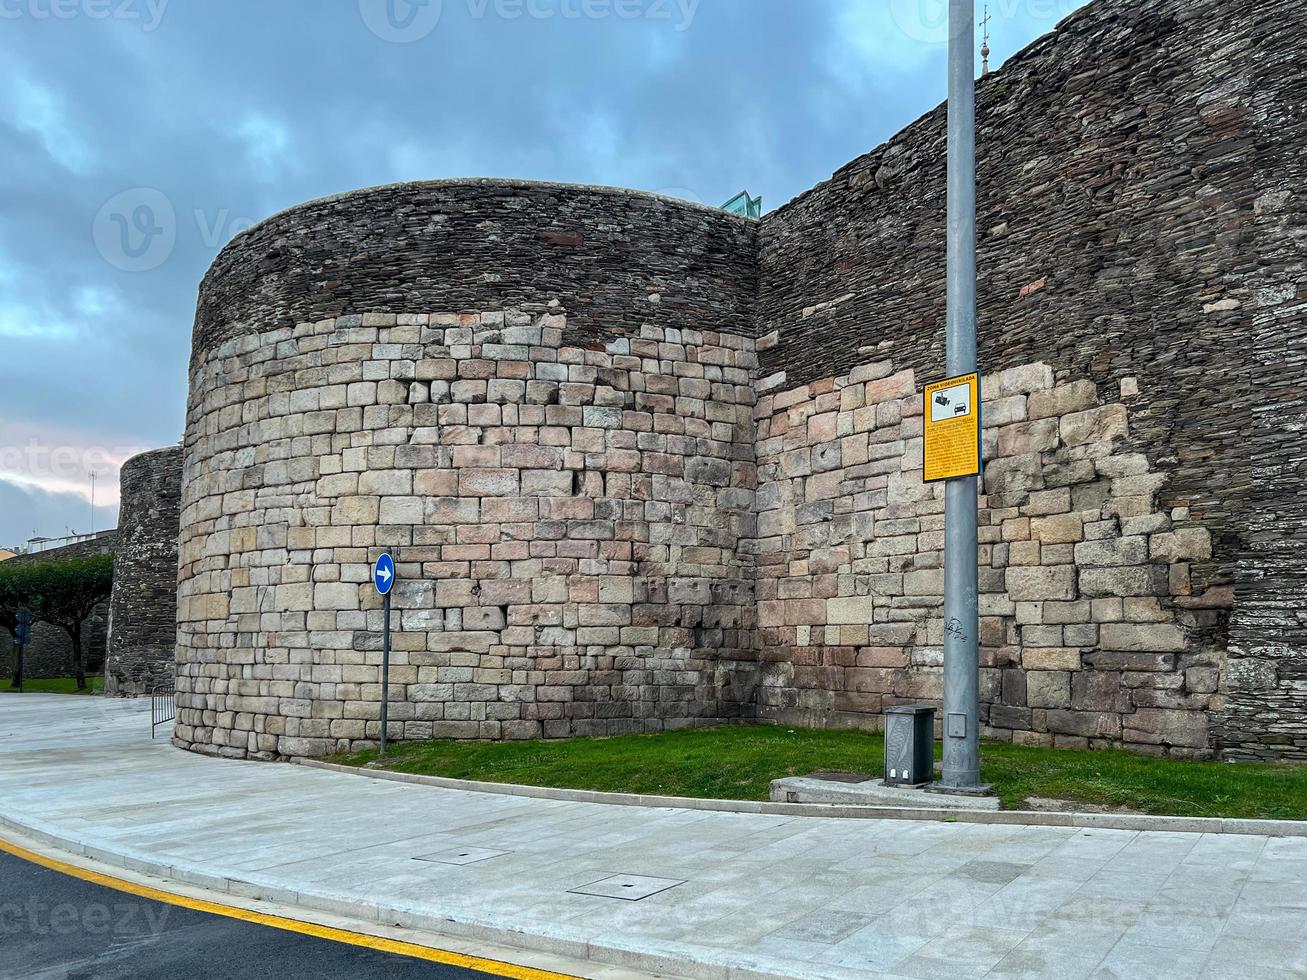 Visualizza a partire dal il romano parete di lugo. il muri di lugo erano costruito nel il dopo parte di il 3 ° secolo per difendere il romano cittadina di lucus. foto